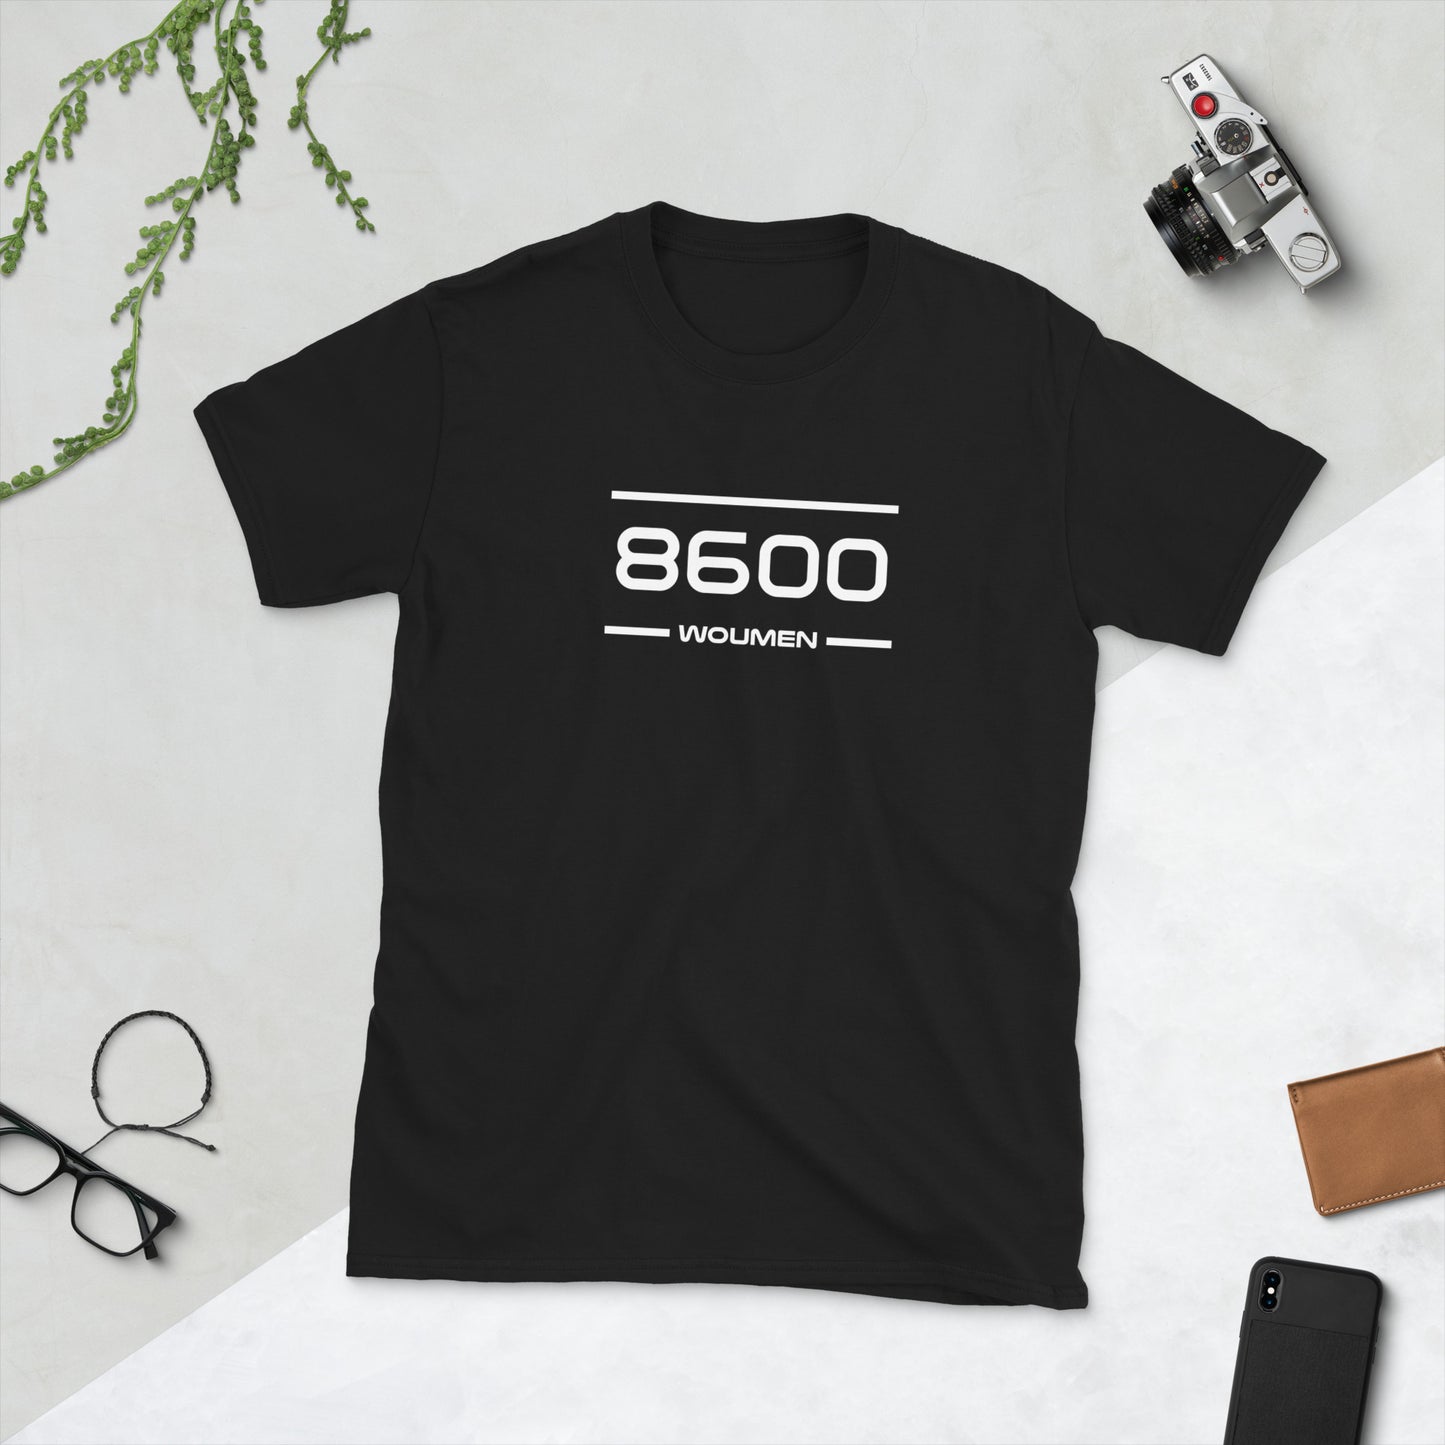 Tshirt - 8600 - Woumen